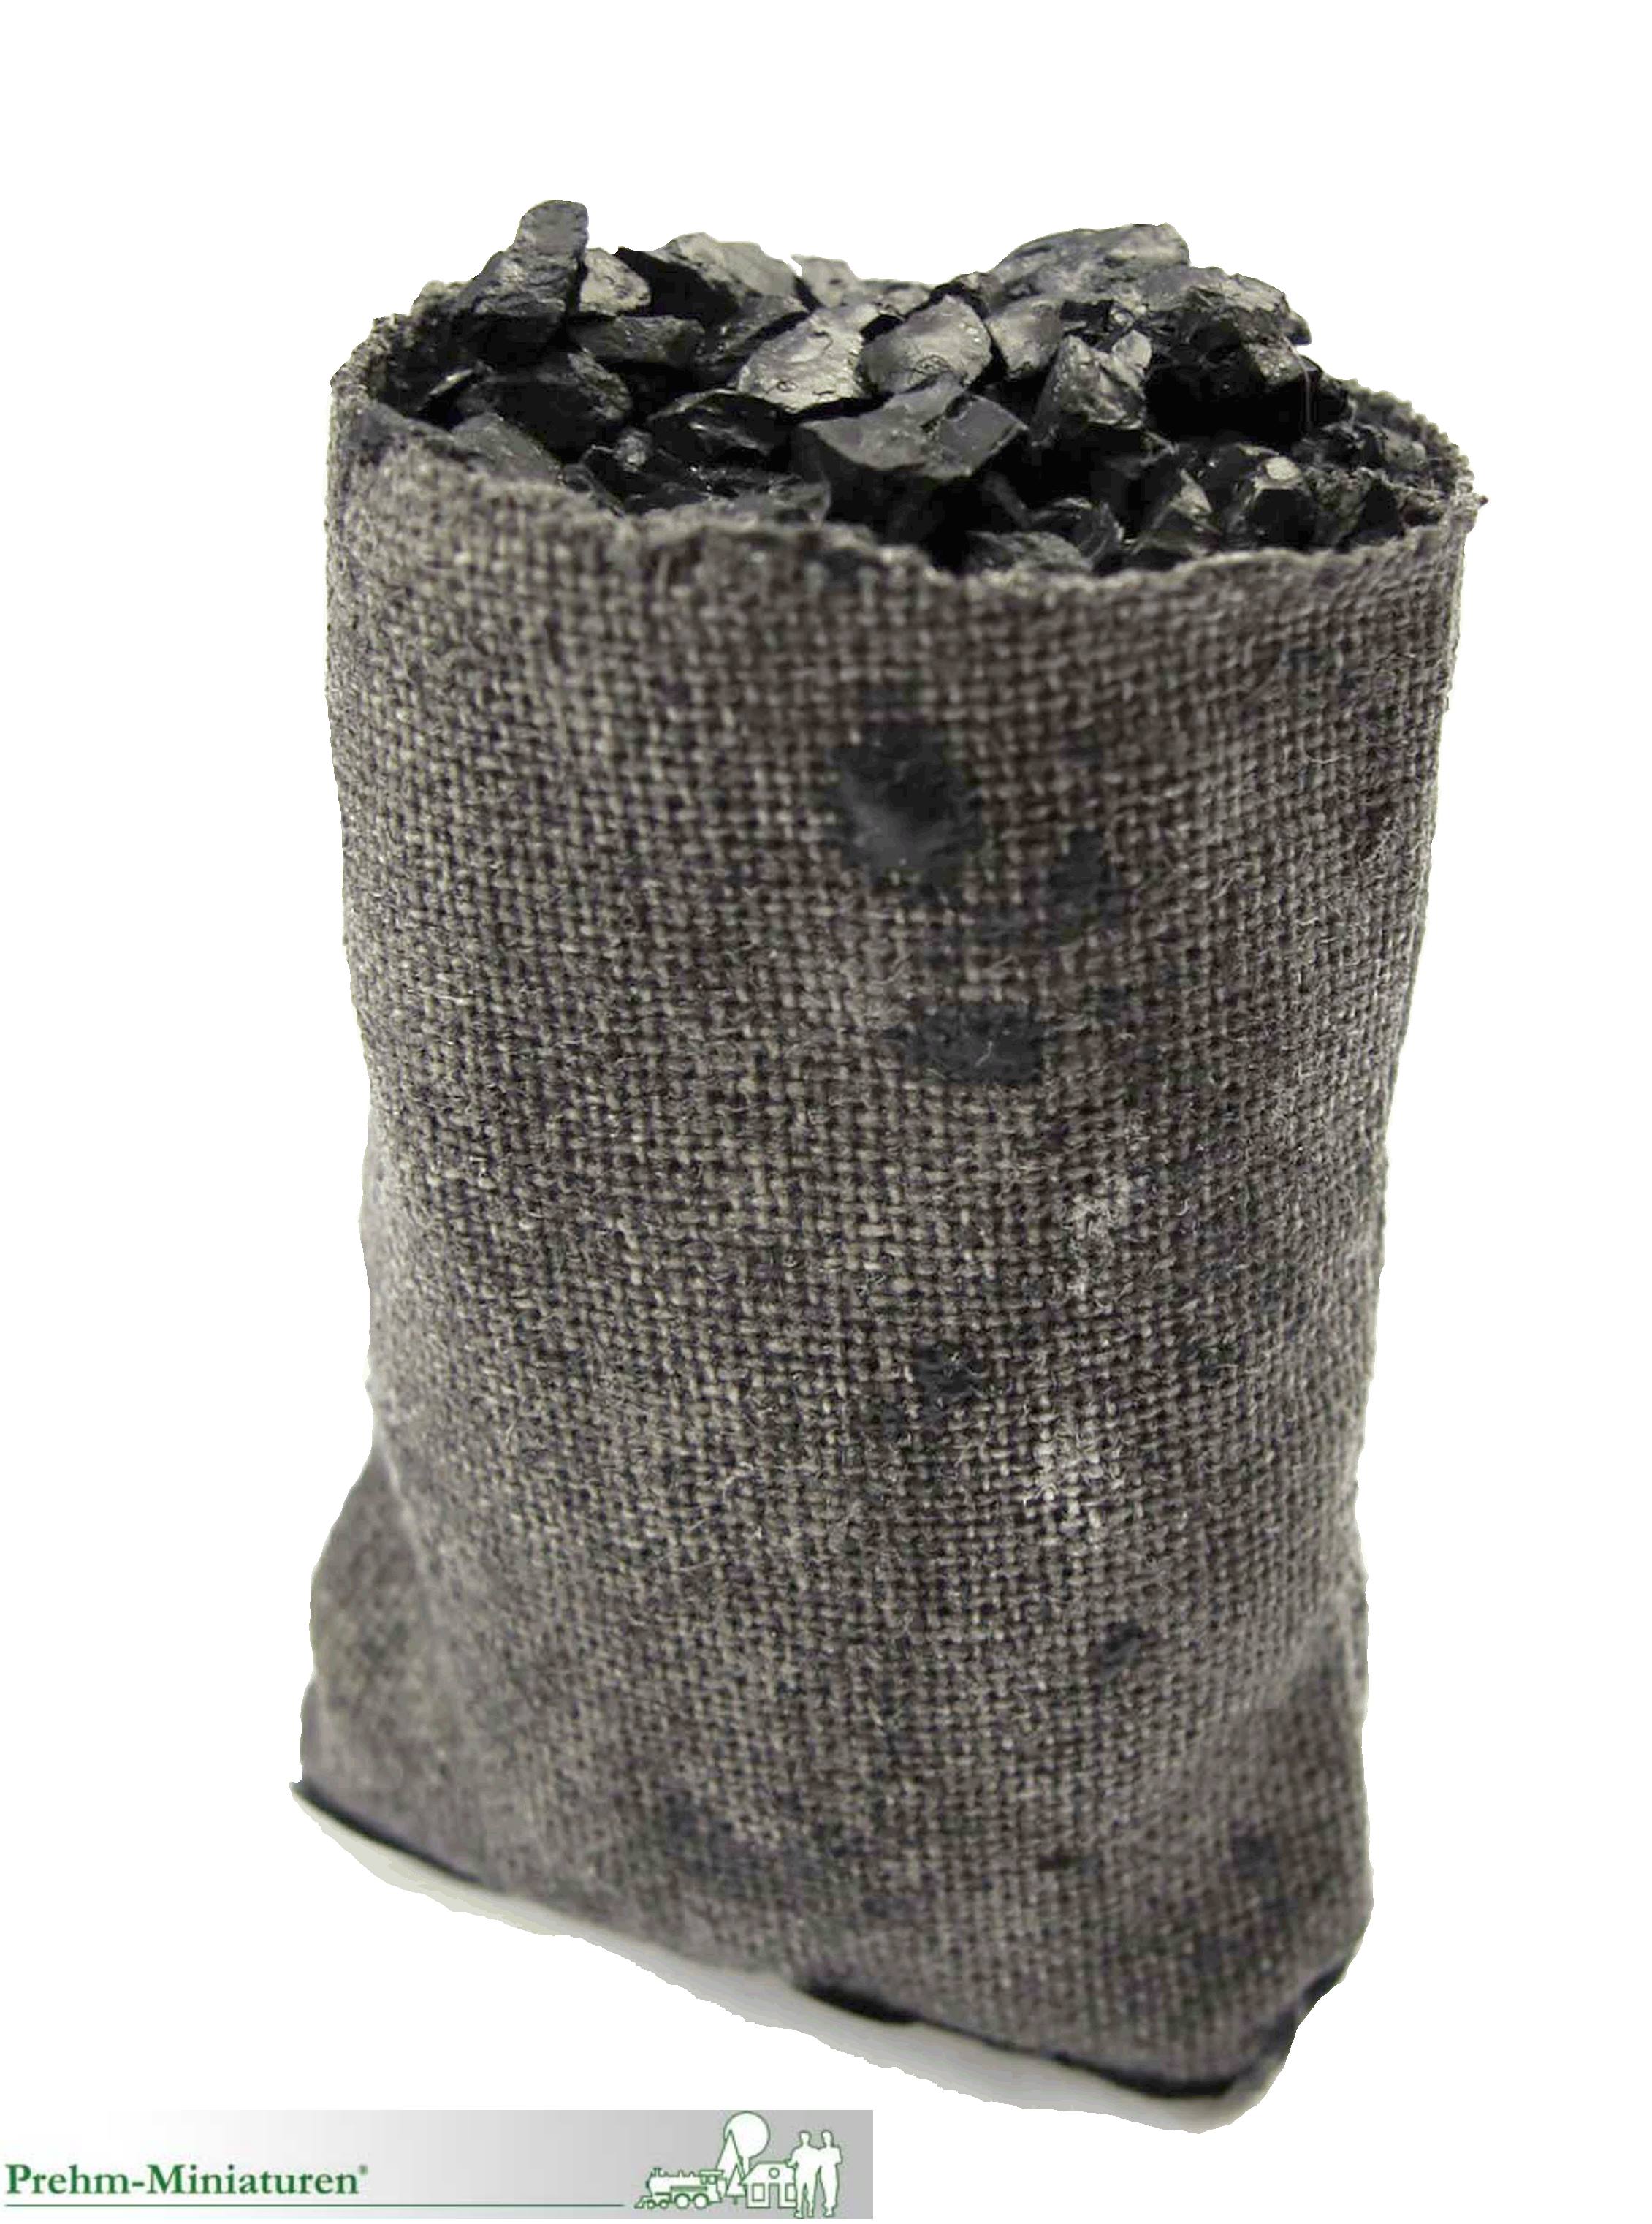 Kohlesack offen - passend zum Frderband oder der Kohlehandlung - Neuheit 2021 - Art. Nr. 550616